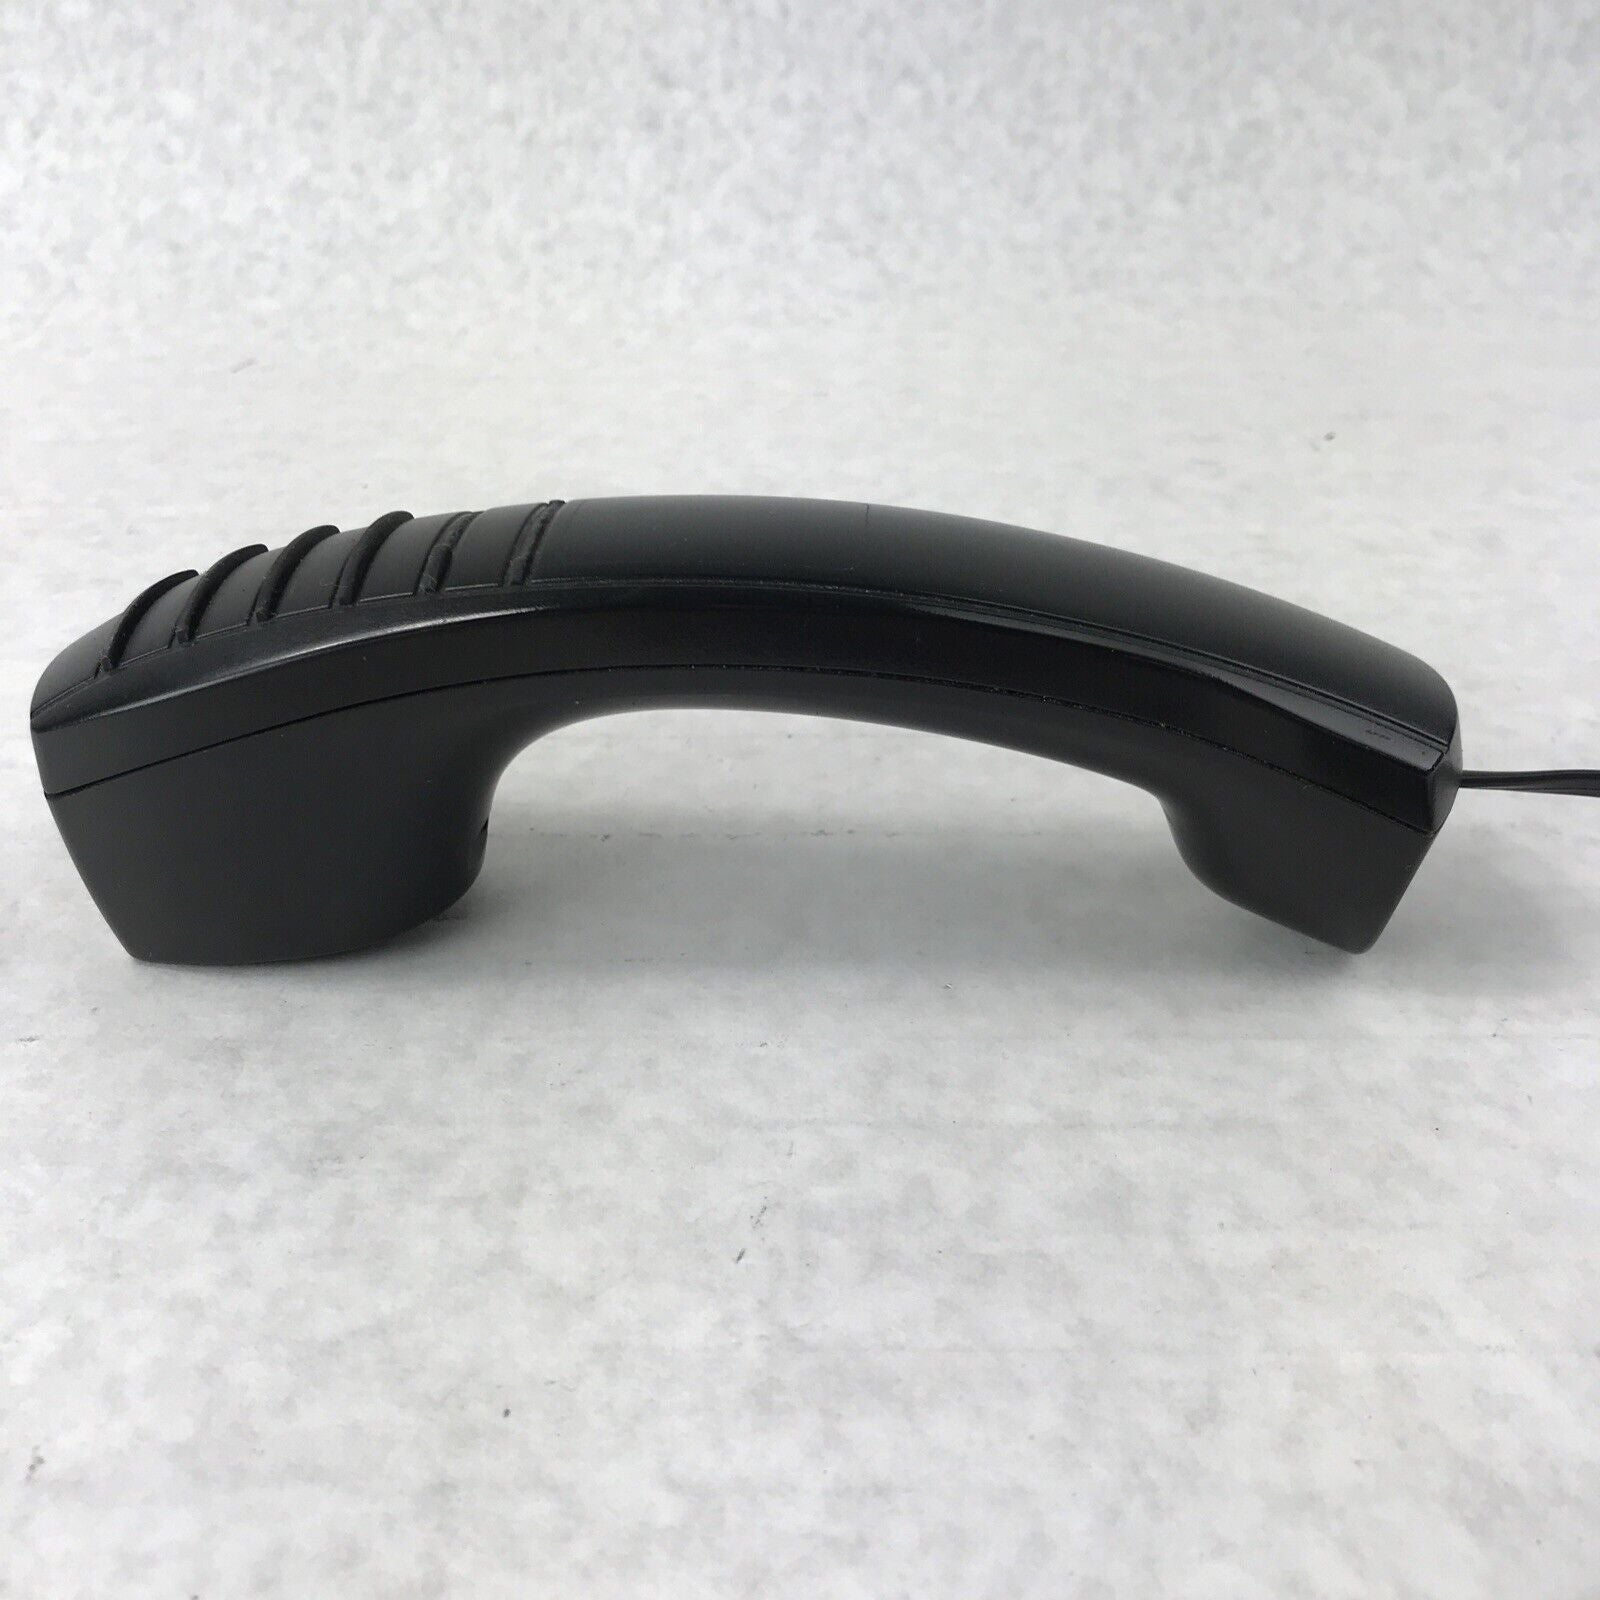 Mitel 5300 Series IP Phone Handset 5320e 5330e 5340e